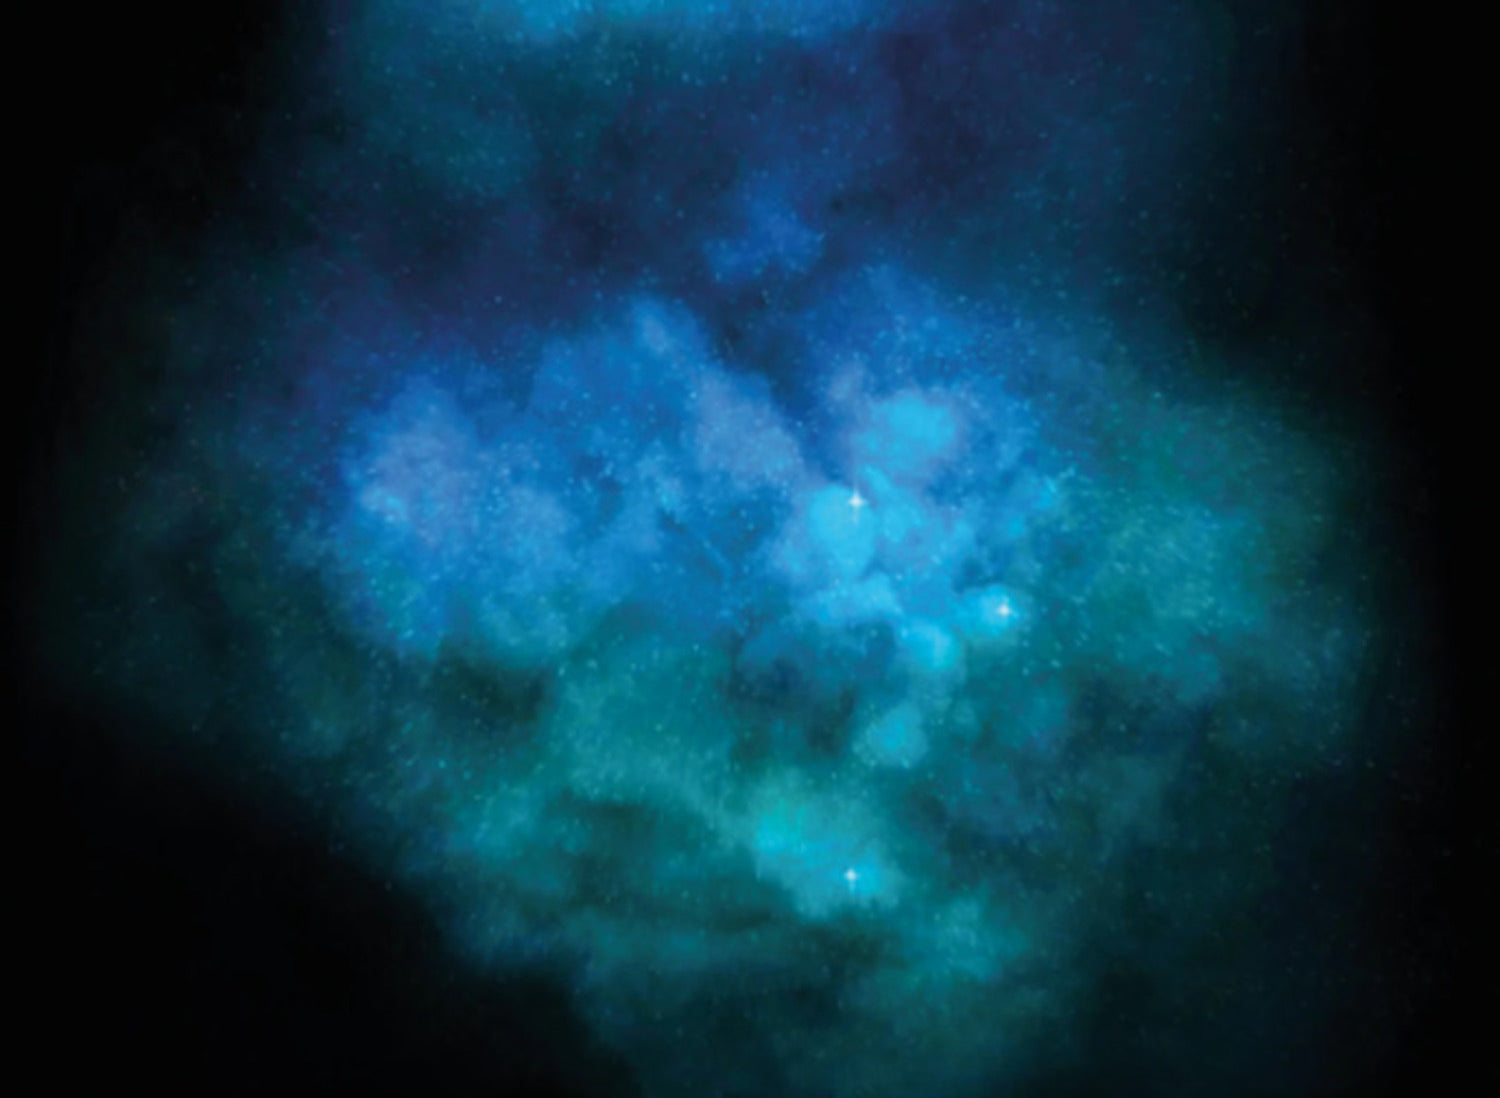 Galaxy Explosion (Diamond Dust - Turquoise)